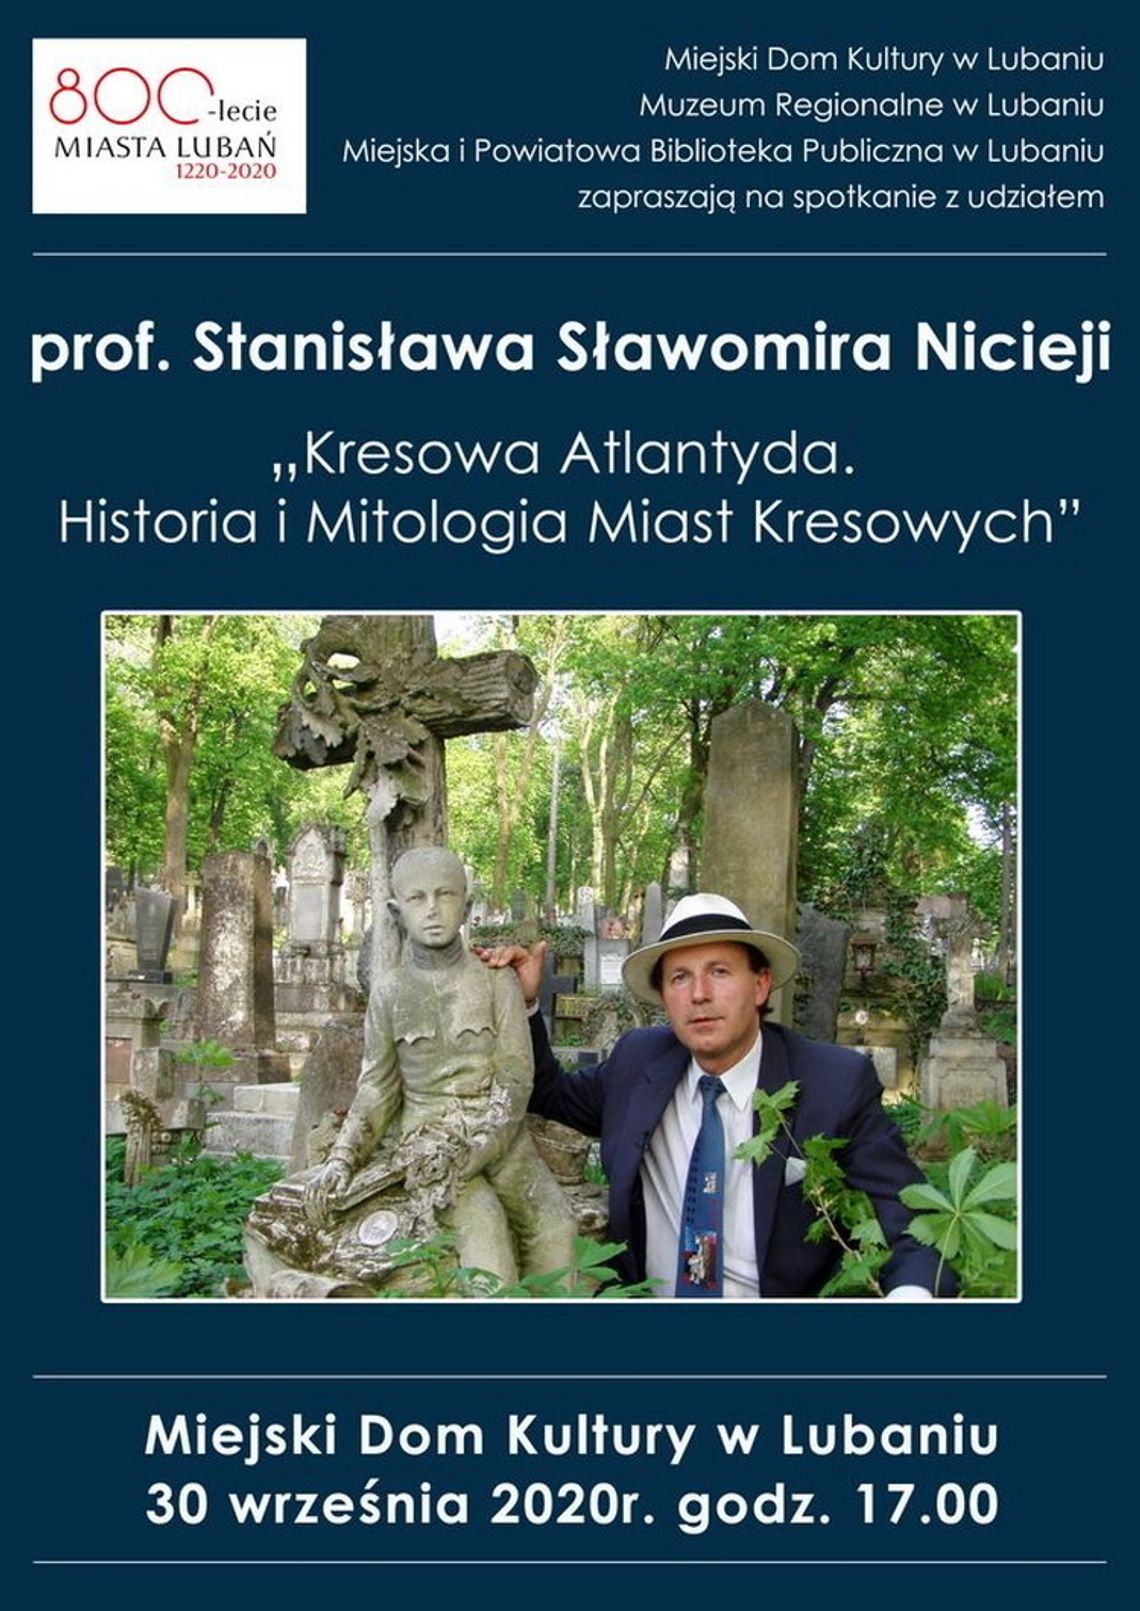 Prof. Stanisław Sławomir Nicieja w Lubaniu